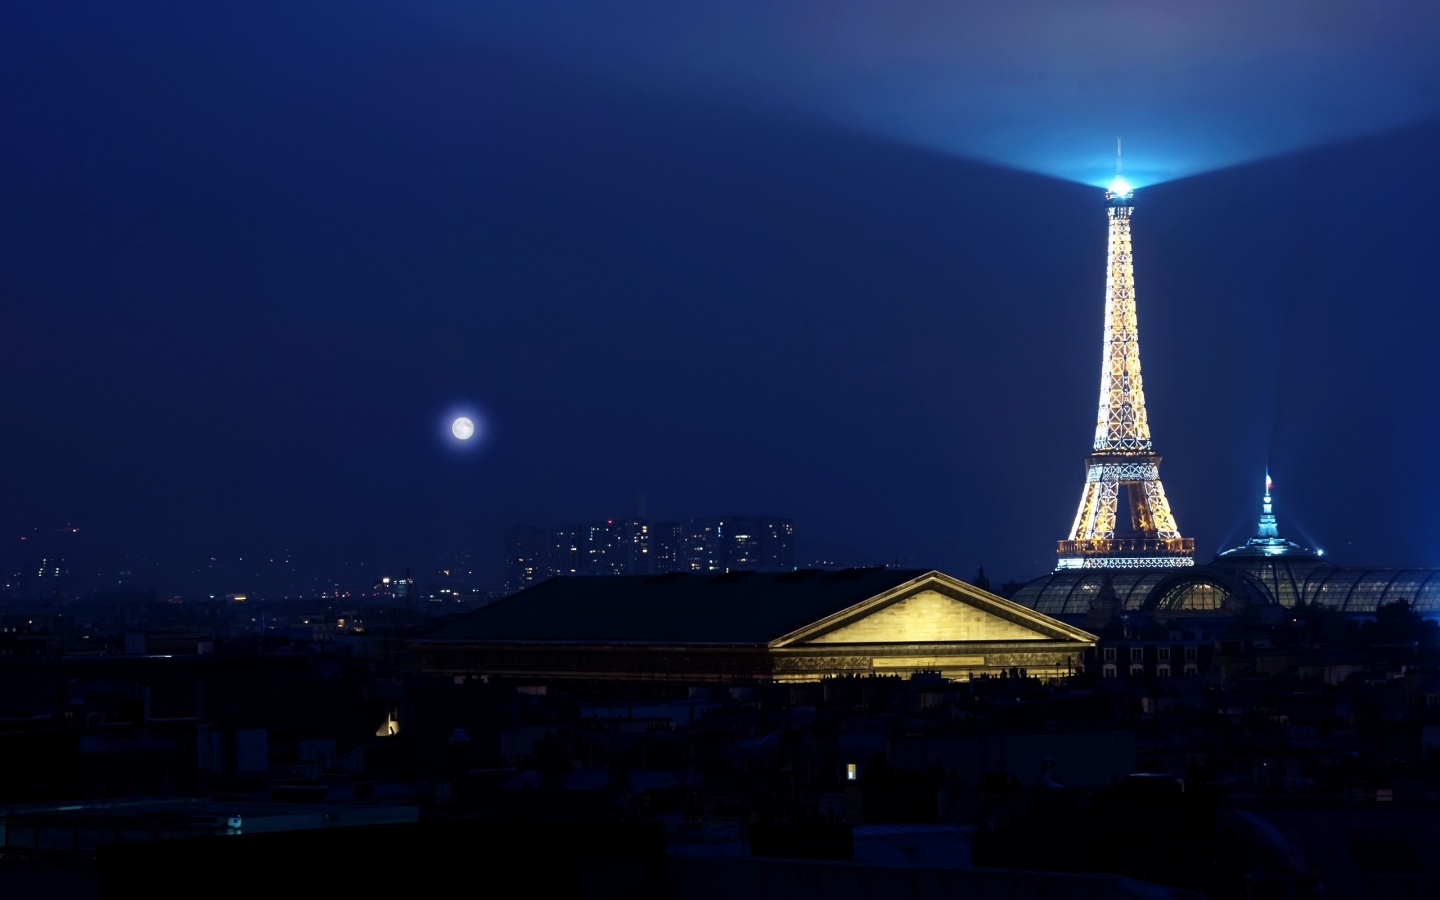 Eiffel Tower Light for 1440 x 900 widescreen resolution